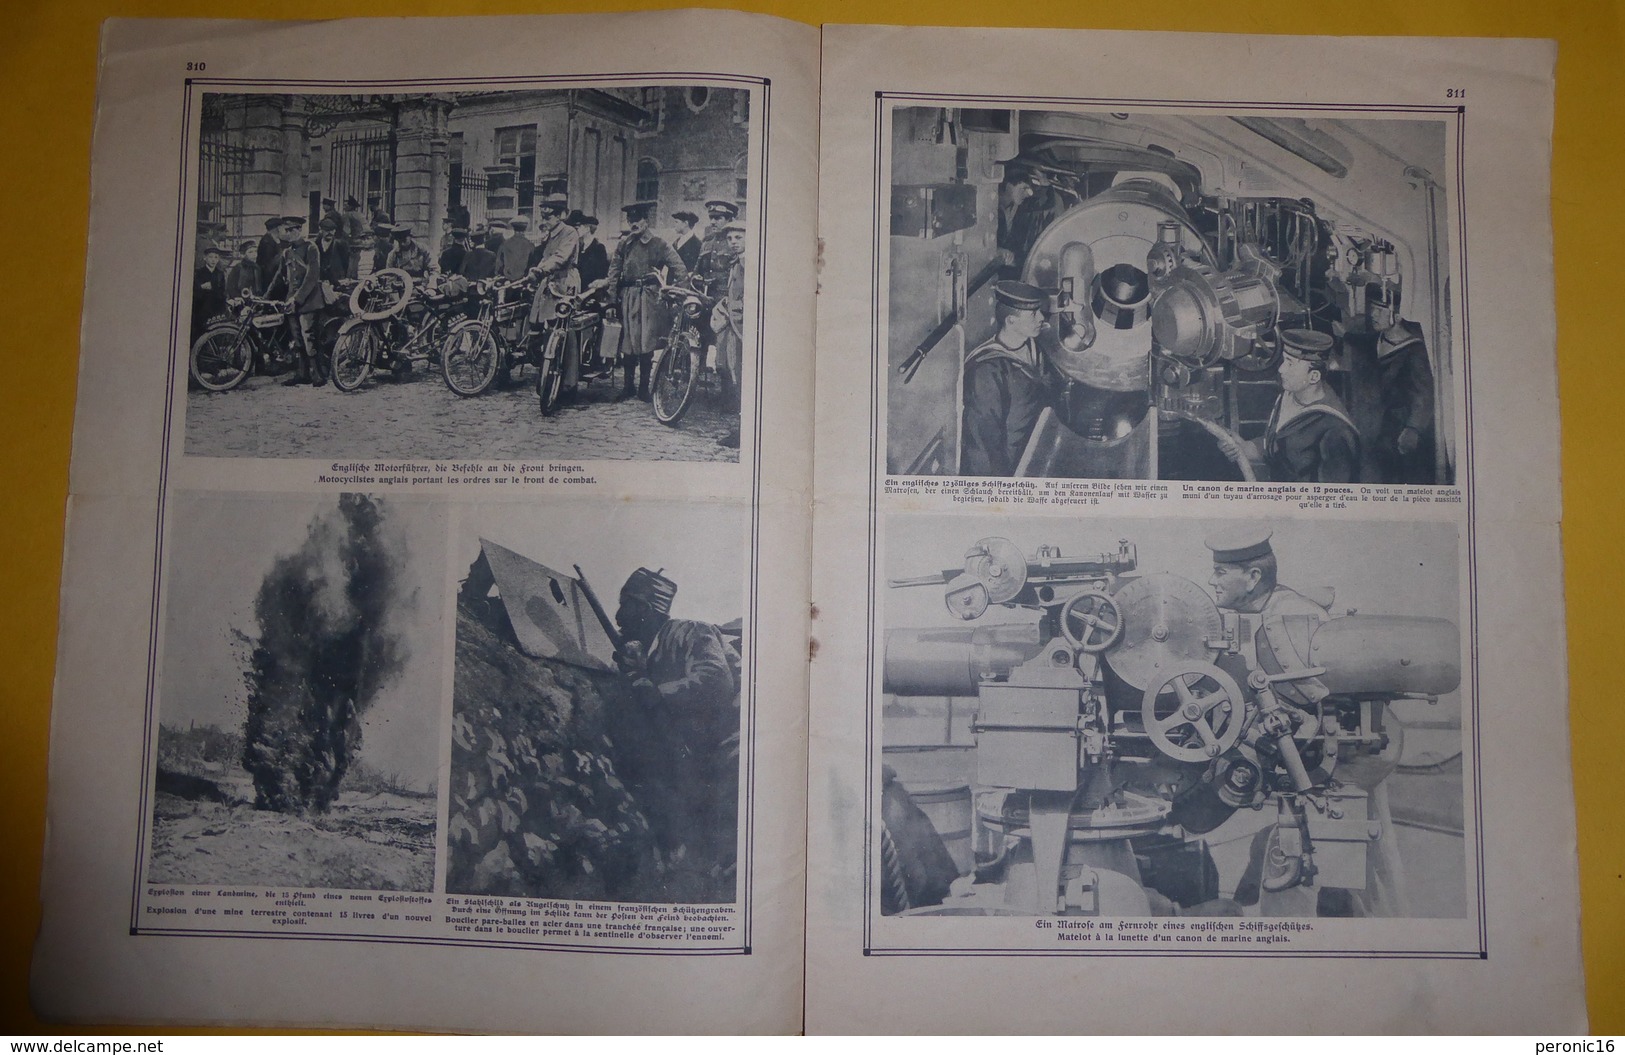 Courrier De Guerre - Edition Hebdomadaire N° 20 (Français - Allemand) - 5. World Wars